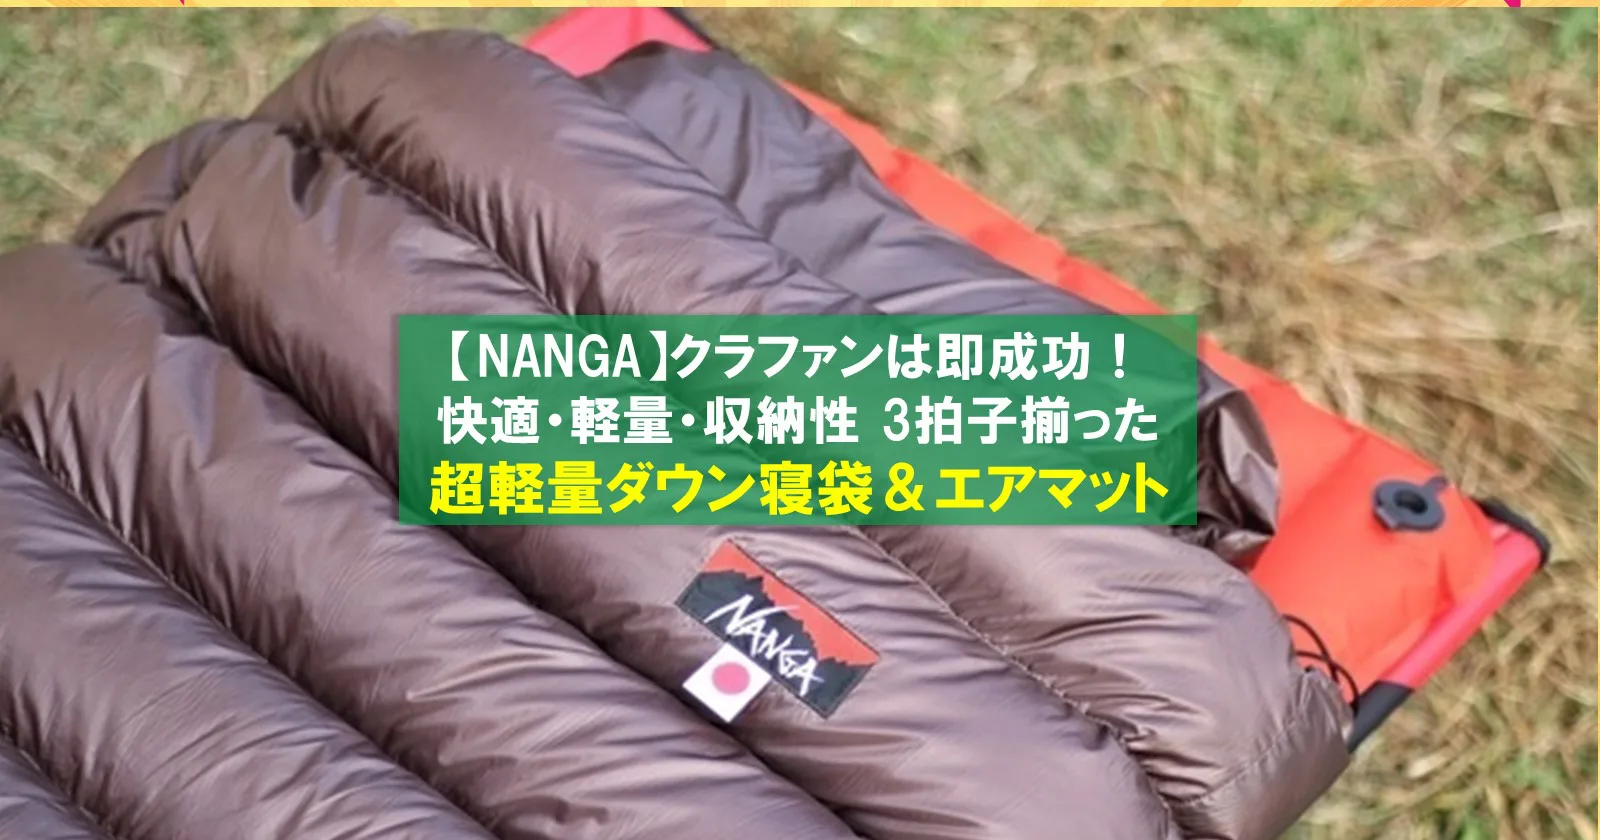 NANGA「超軽量寝袋&エアマット」は快適さ・軽さ・コンパクトさ 